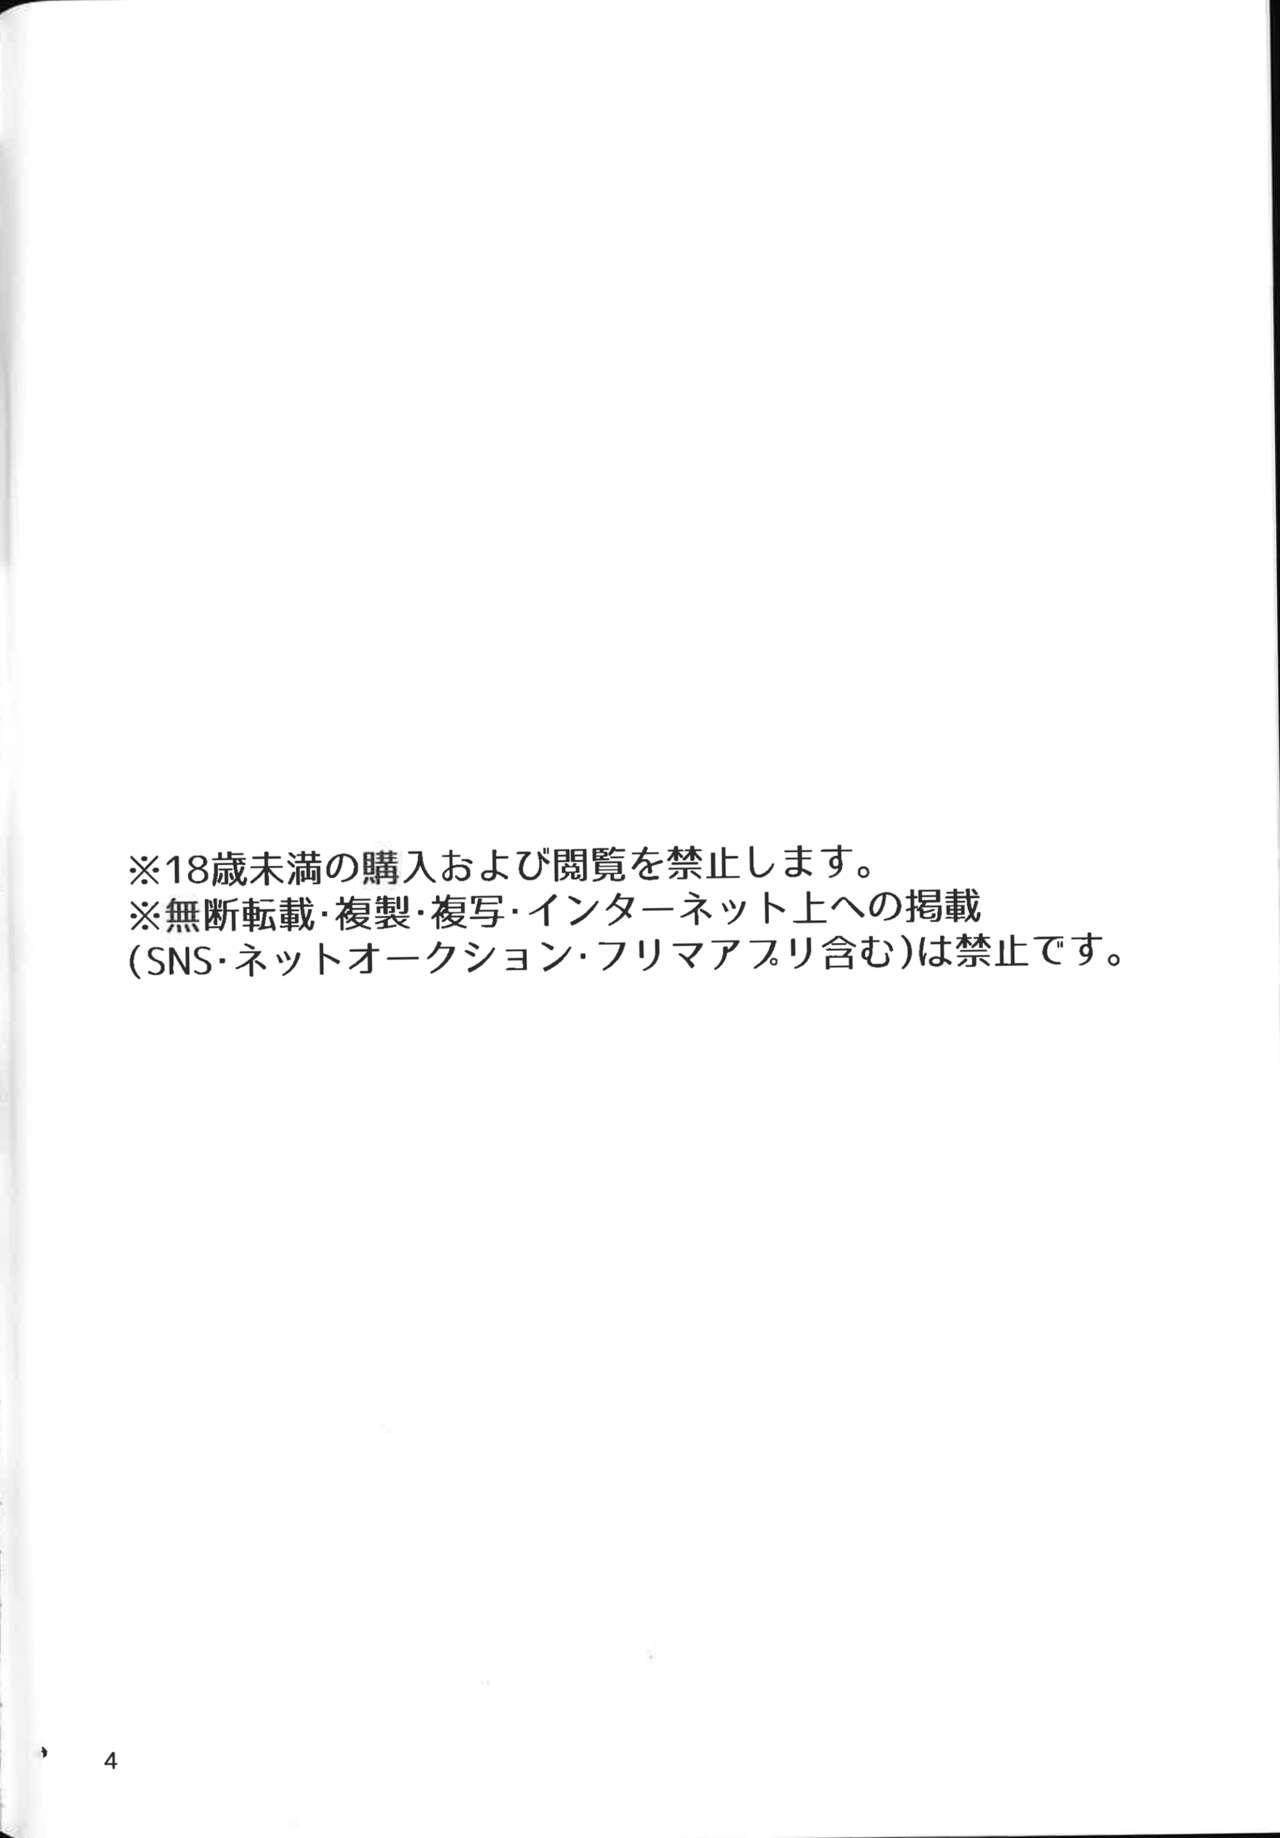 Moneytalks Shiki Natsume wa Amaetai! + Rino to Ecchi Suru Hon. | 四季夏目想要撒娇! - Cafe stella to shinigami no chou Female - Page 2